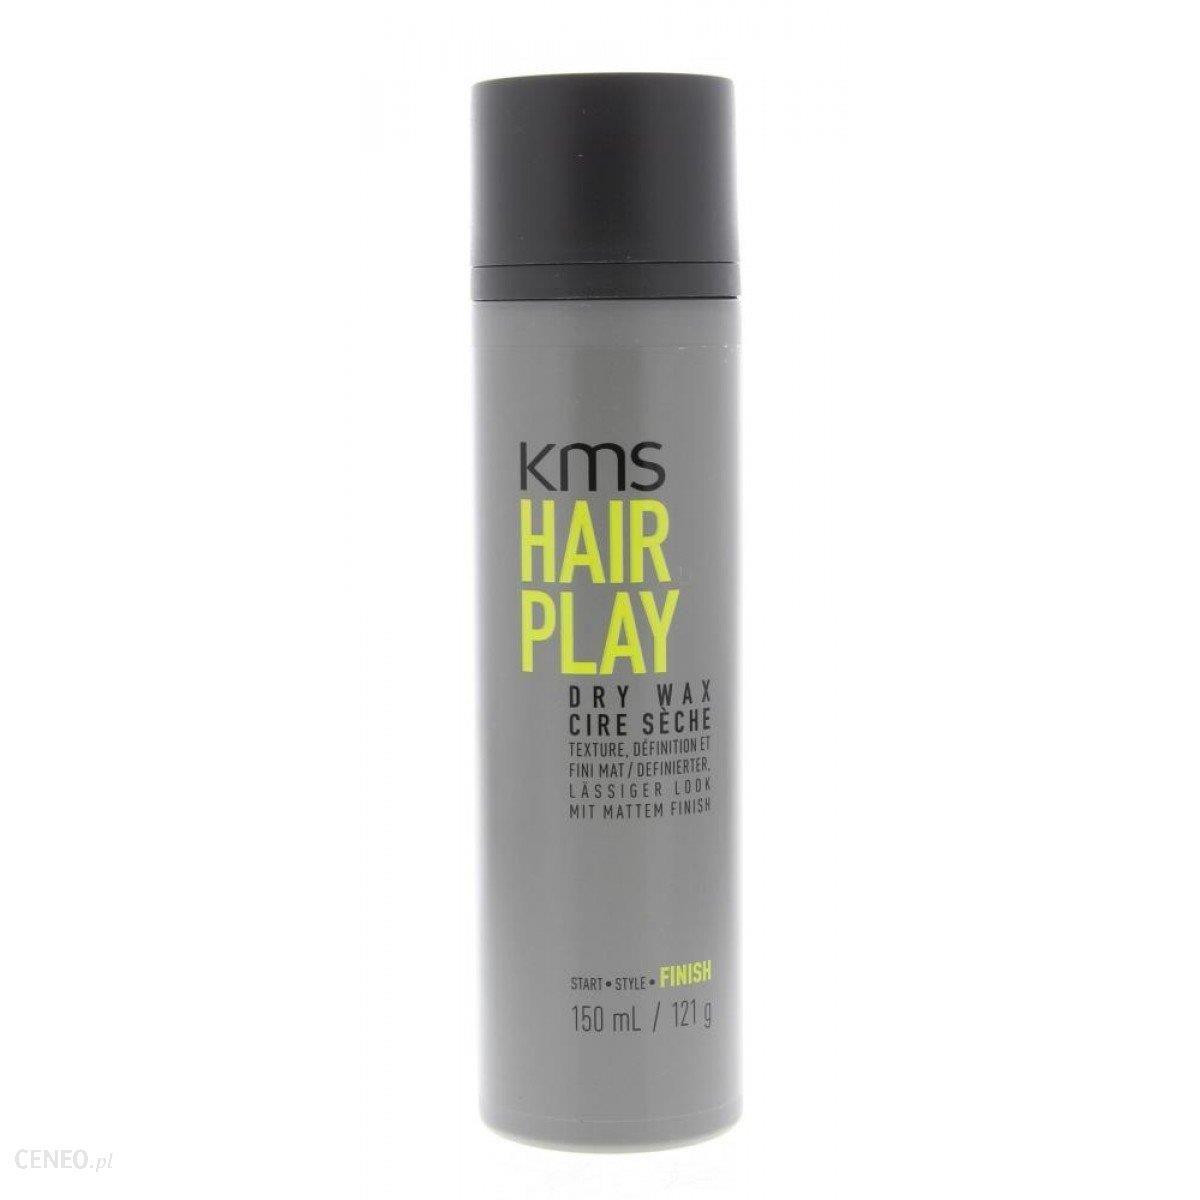 Hair Play Dry Wax suchy wosk do stylizacji włosów 150ml